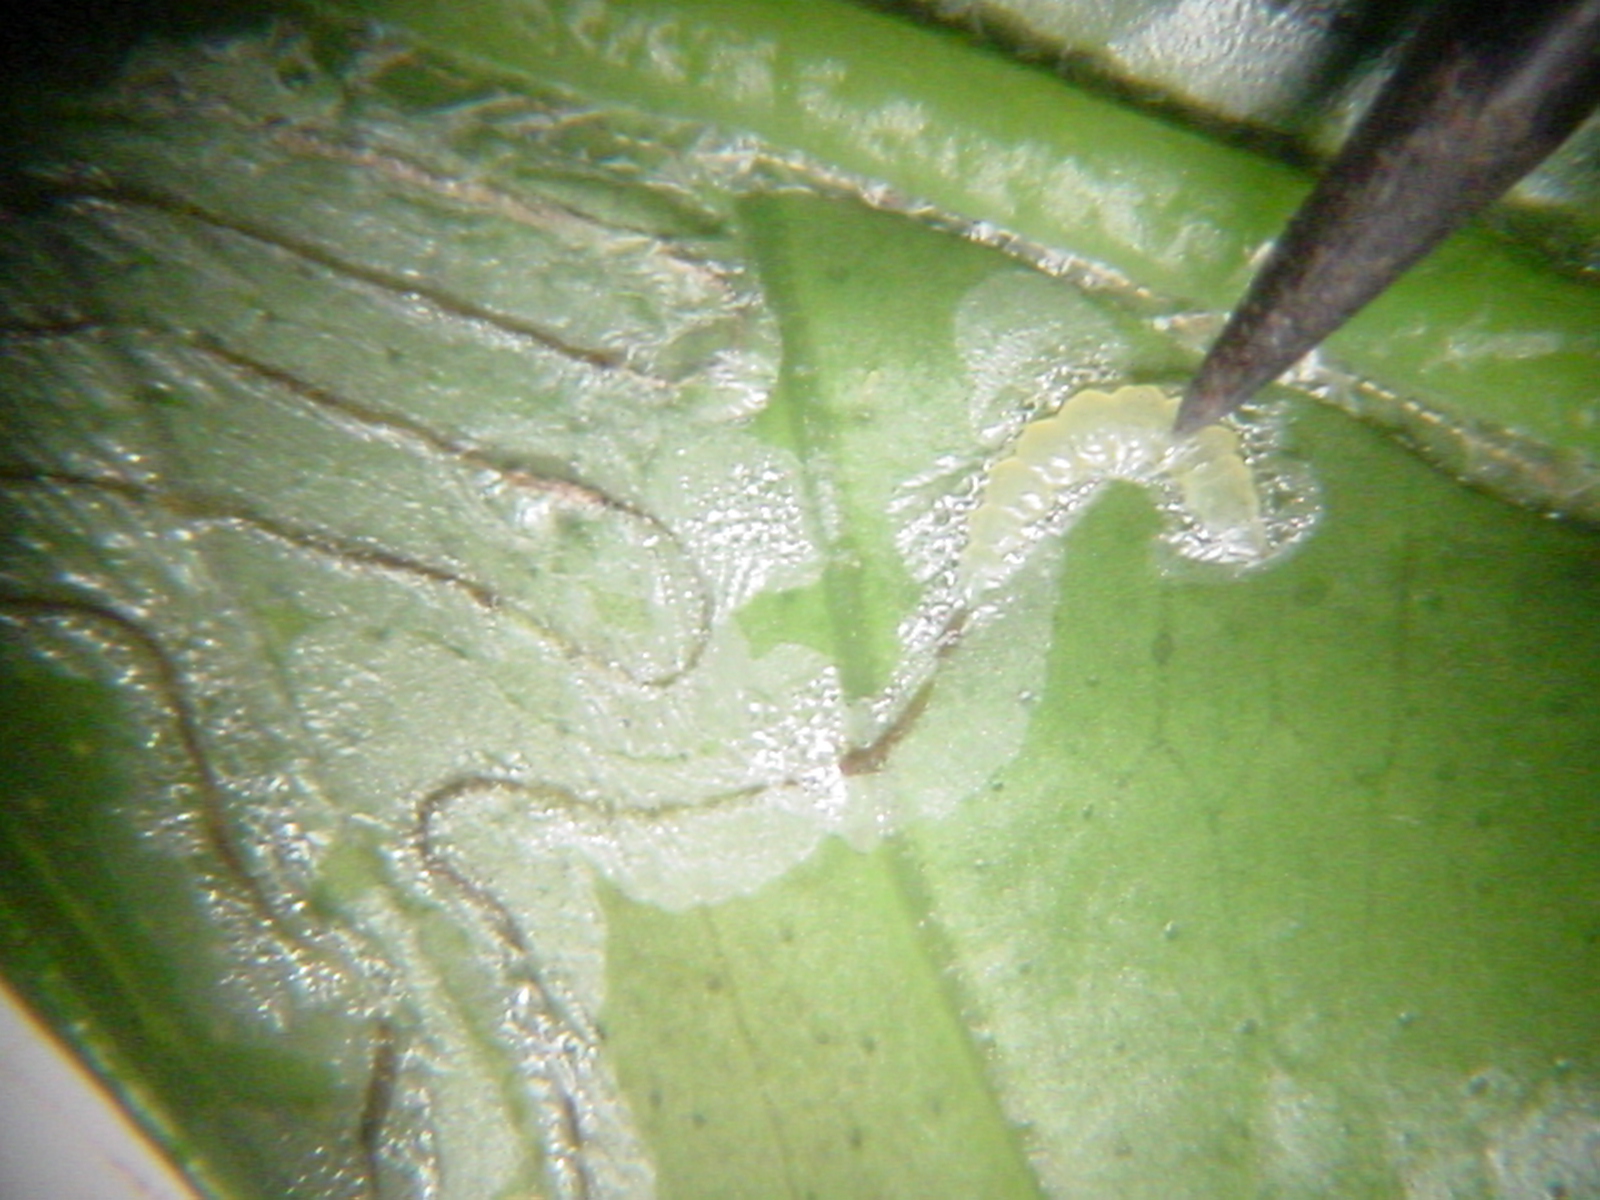 Leafminer egg hatching